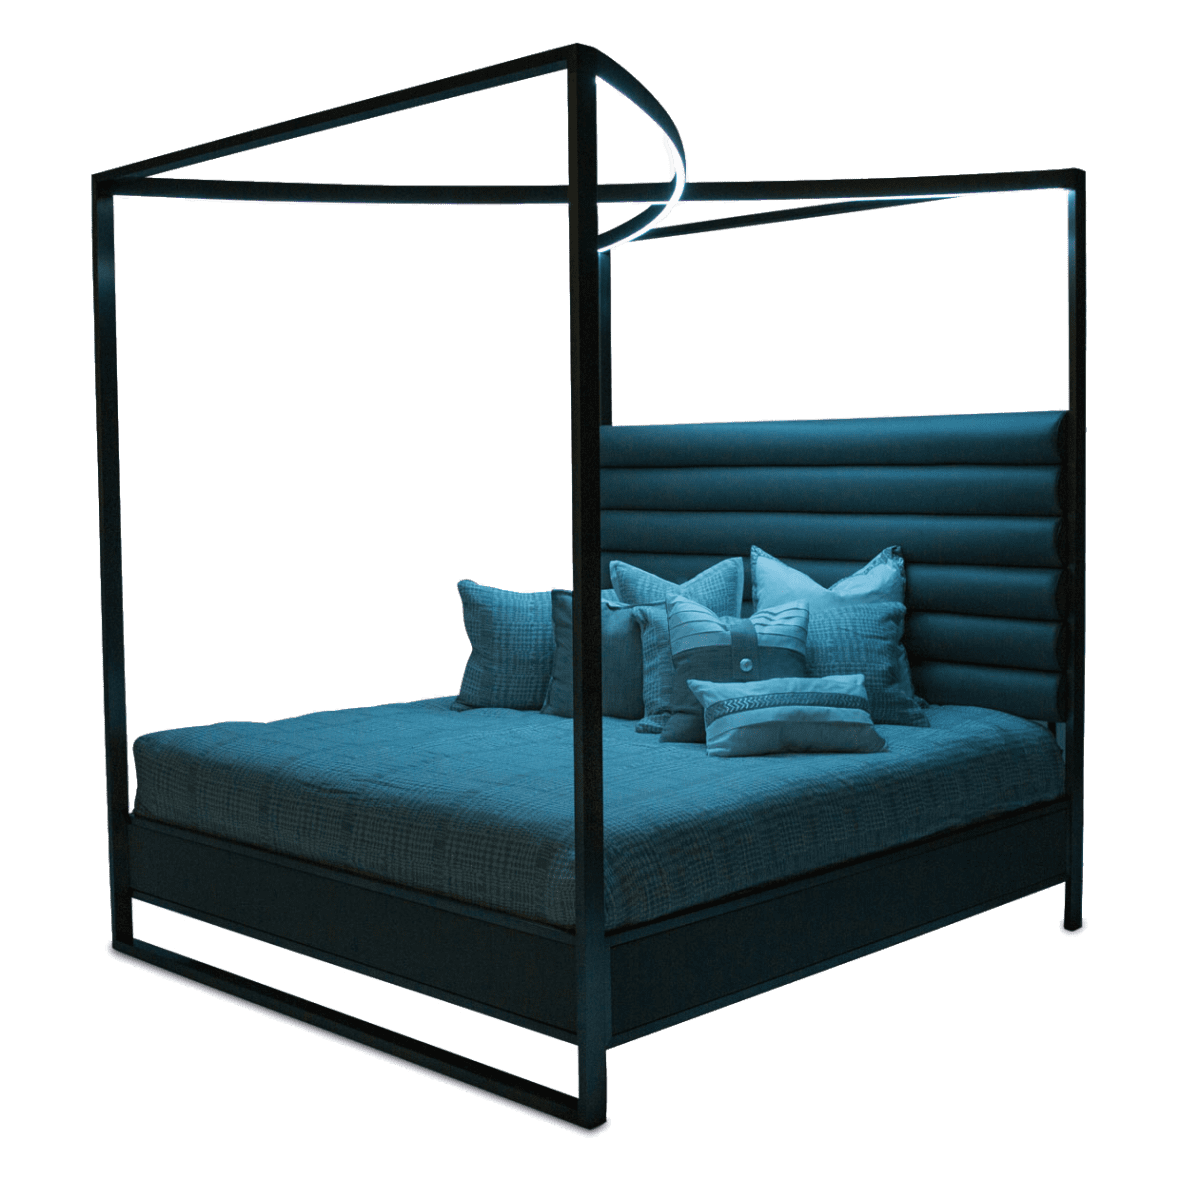 Кровать с декоративным балдахином с подсветкой, размер Queen